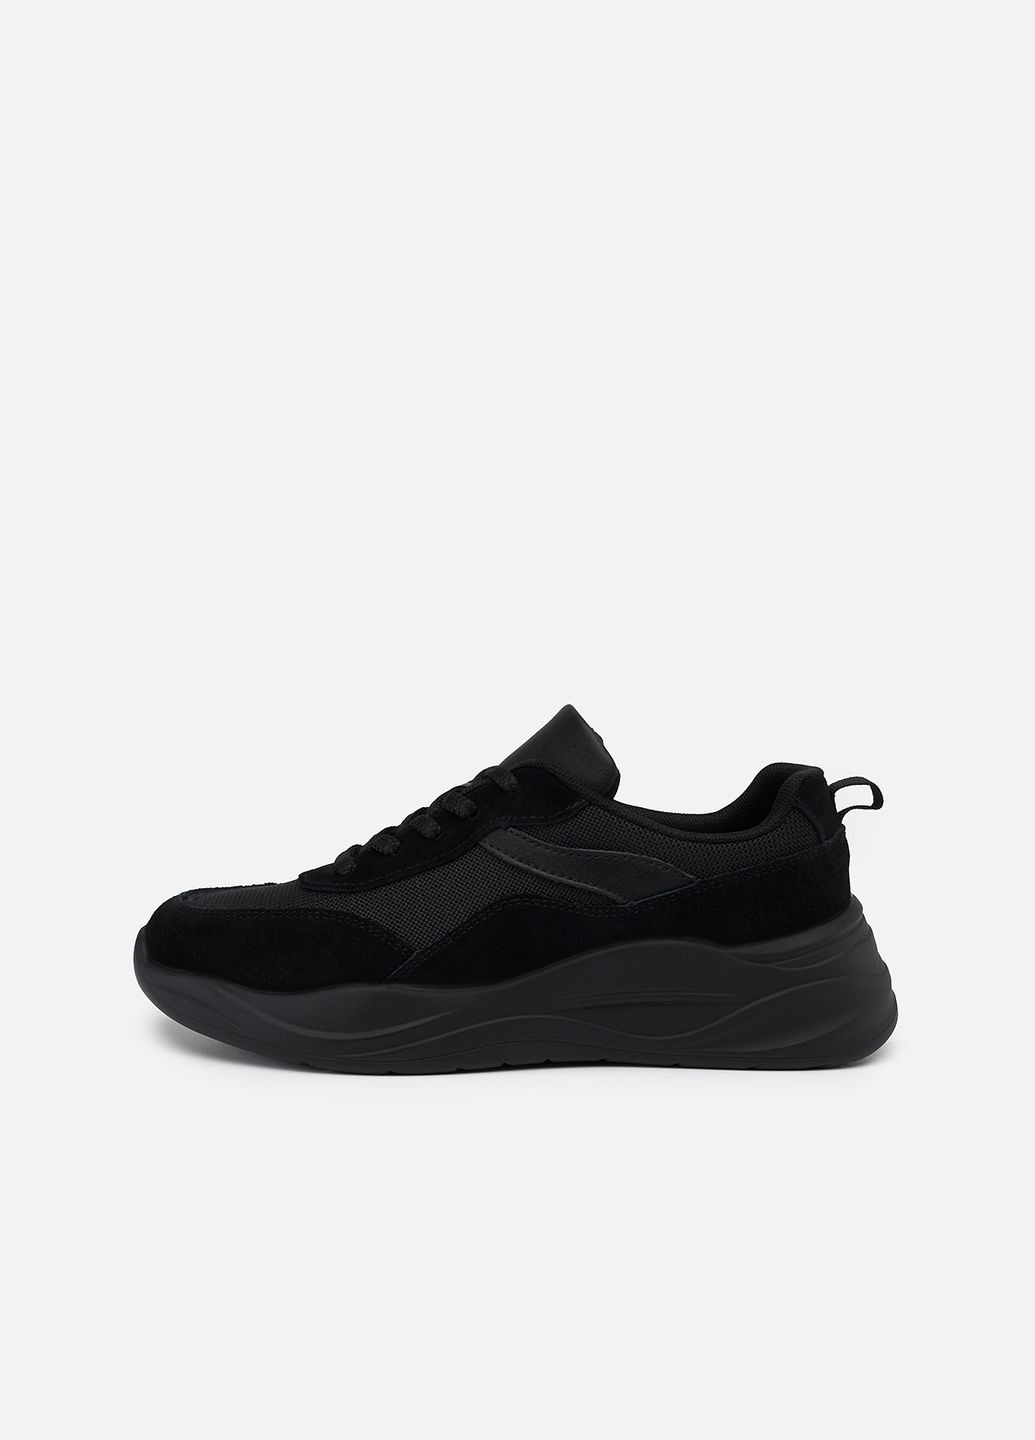 Черные демисезонные женские кроссовки цвет черный цб-00233342 Wilmar